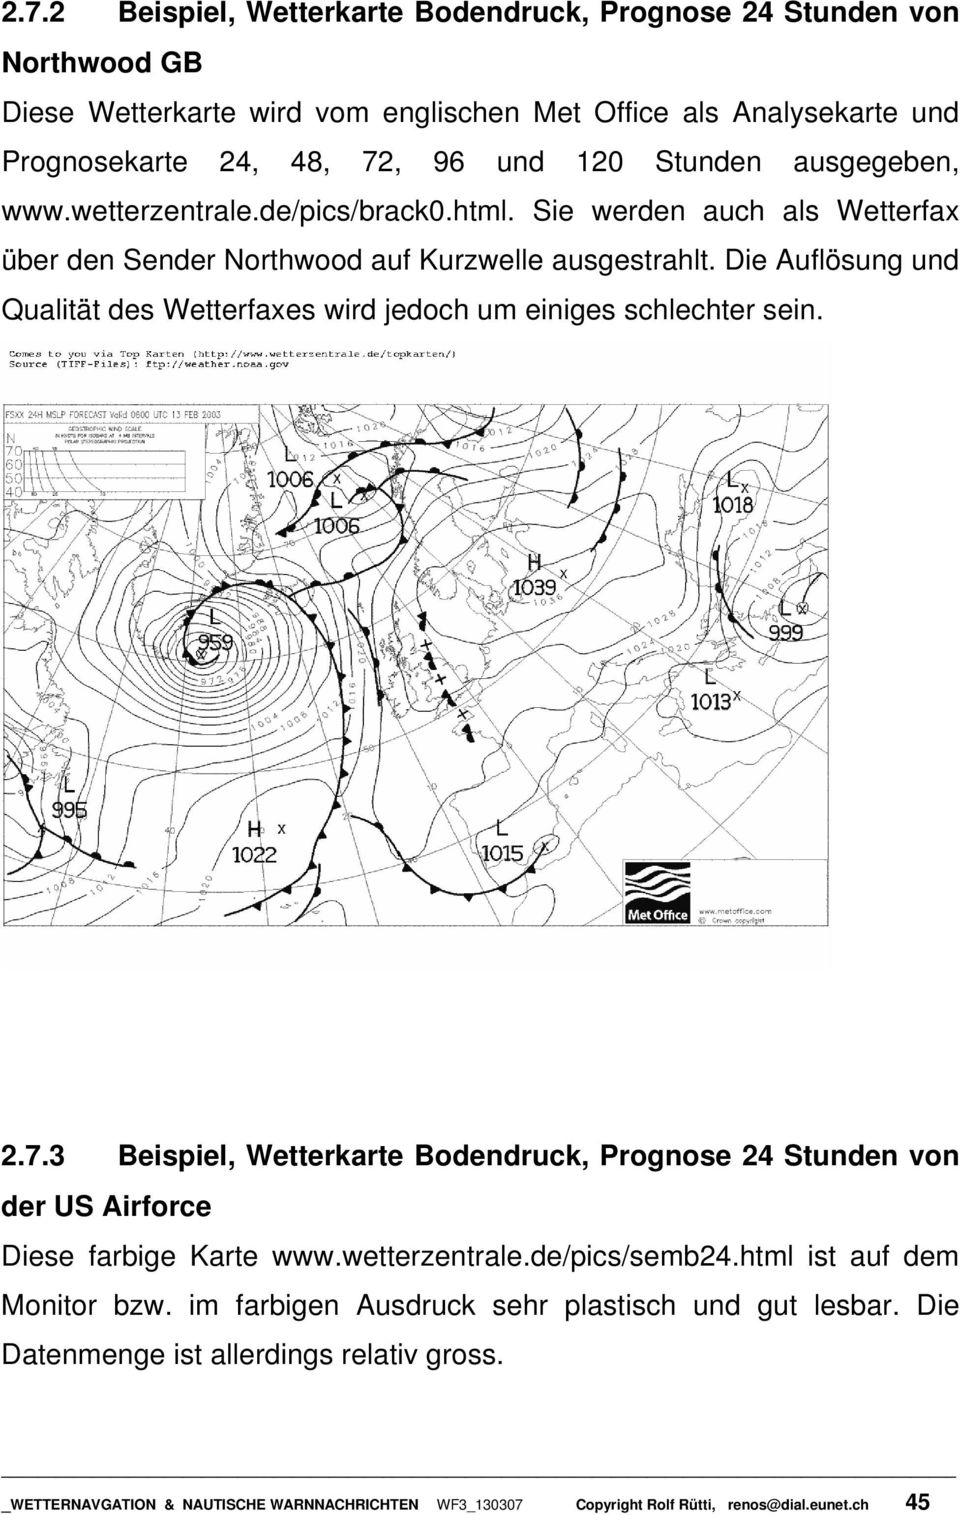 Die Auflösung und Qualität des Wetterfaxes wird jedoch um einiges schlechter sein. 2.7.3 Beispiel, Wetterkarte Bodendruck, Prognose 24 Stunden von der US Airforce Diese farbige Karte www.